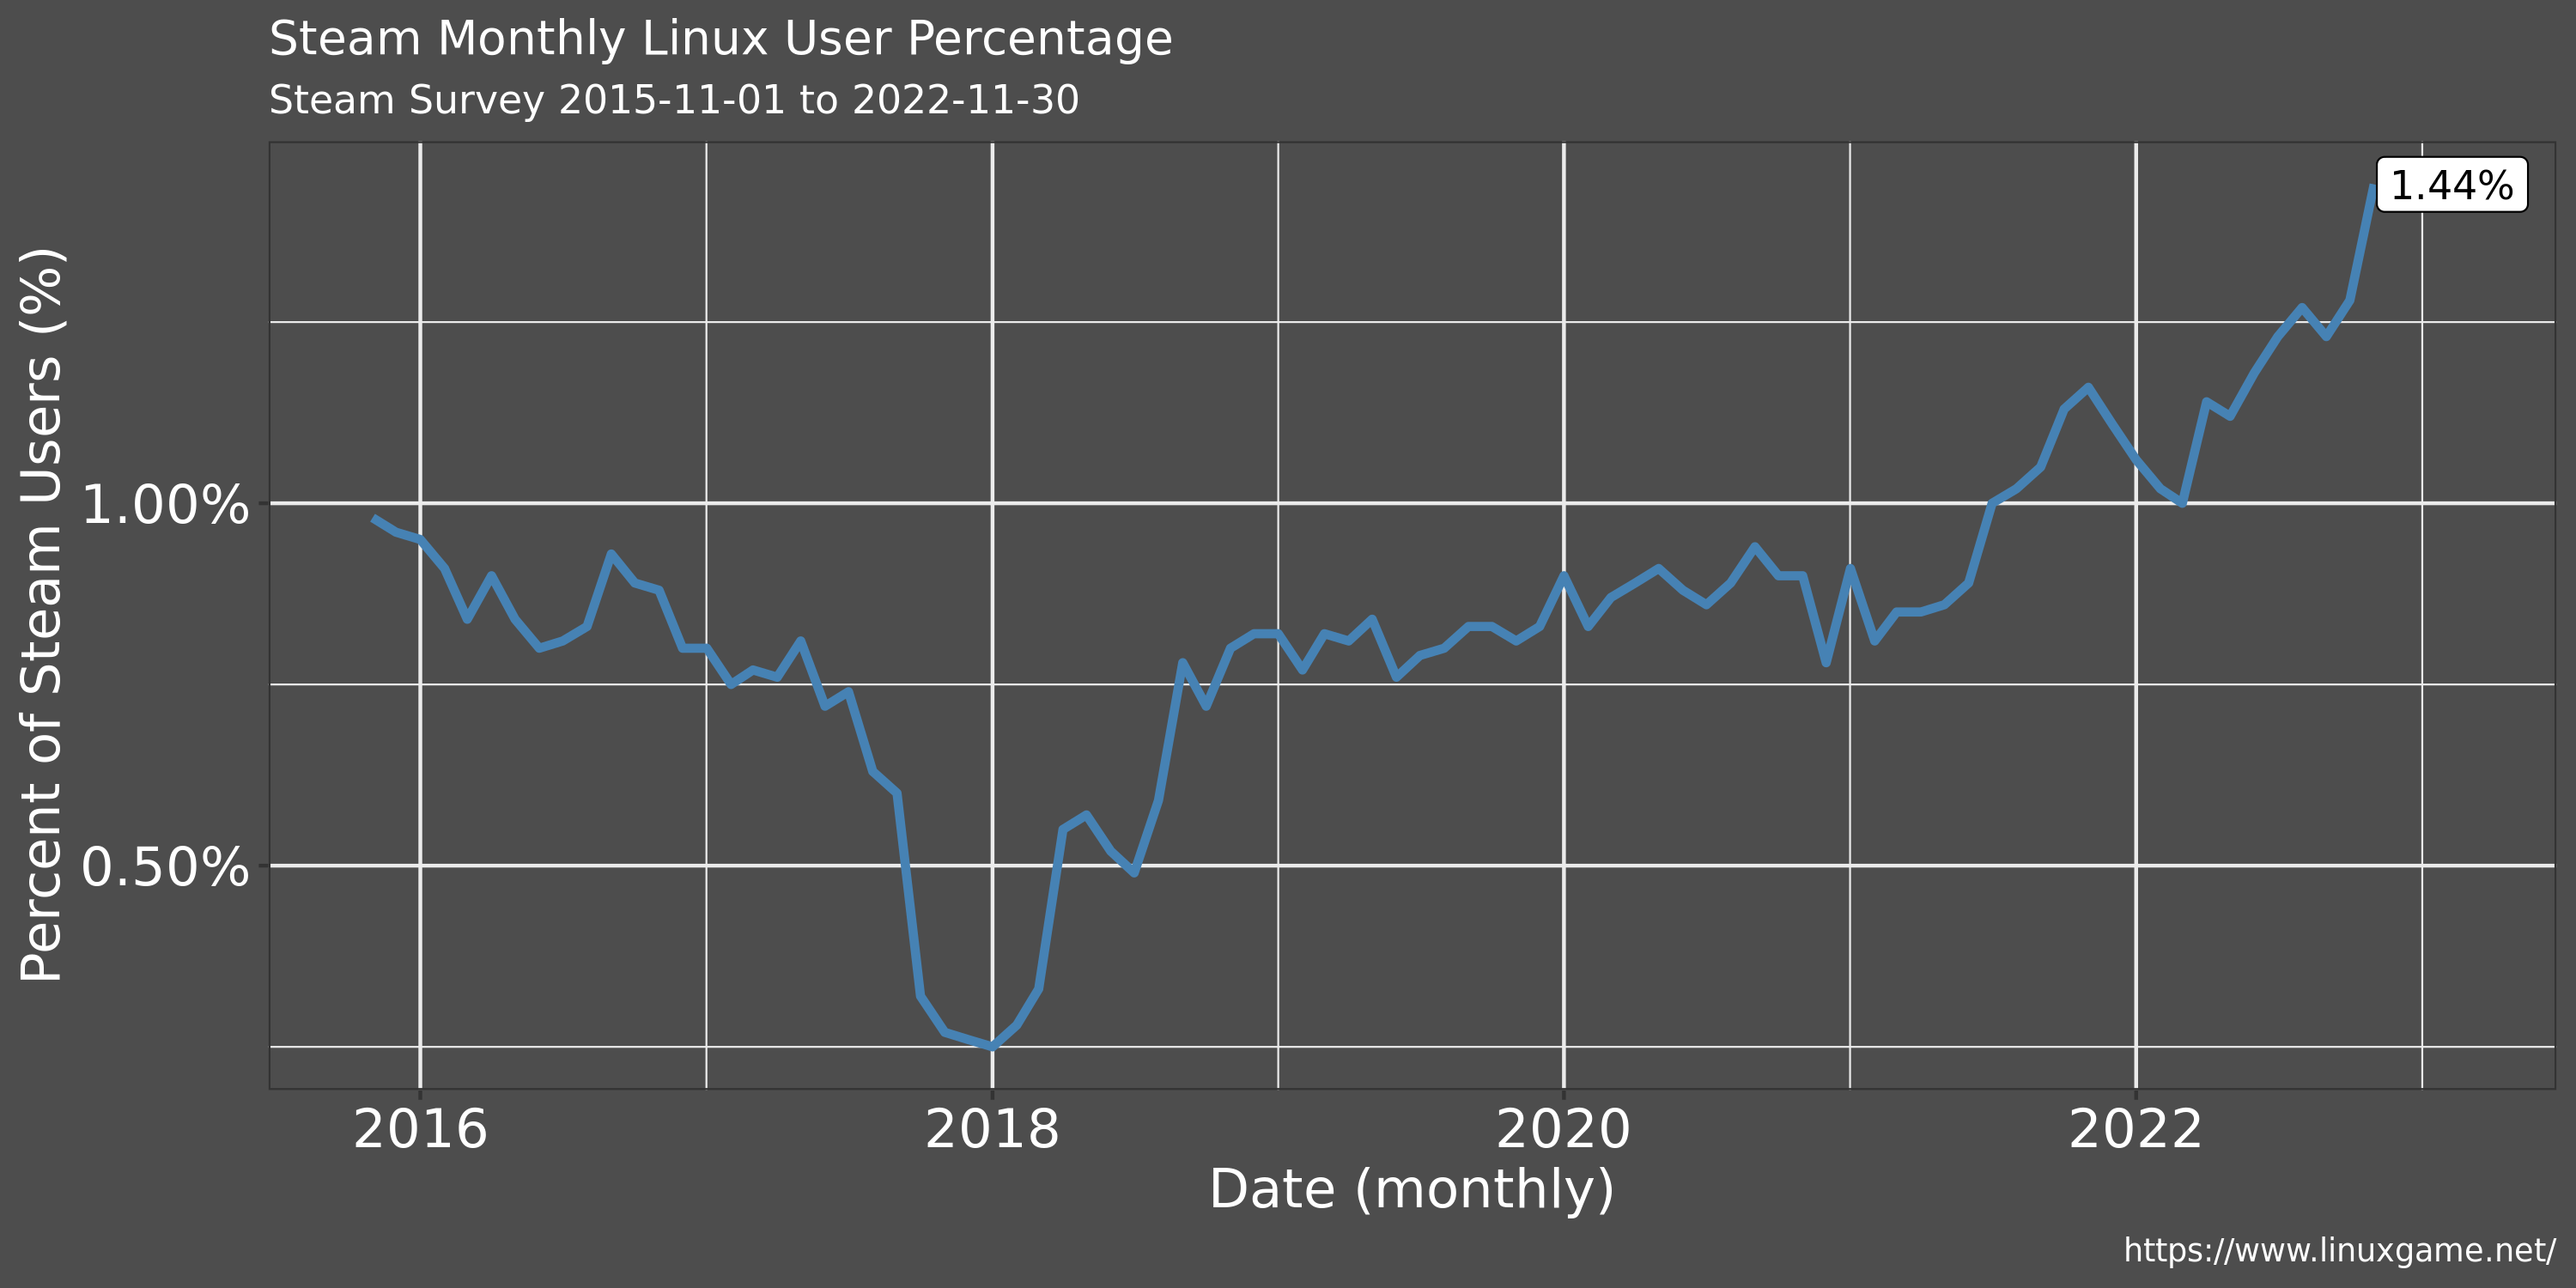 Steam survey Linux usage for November 2022